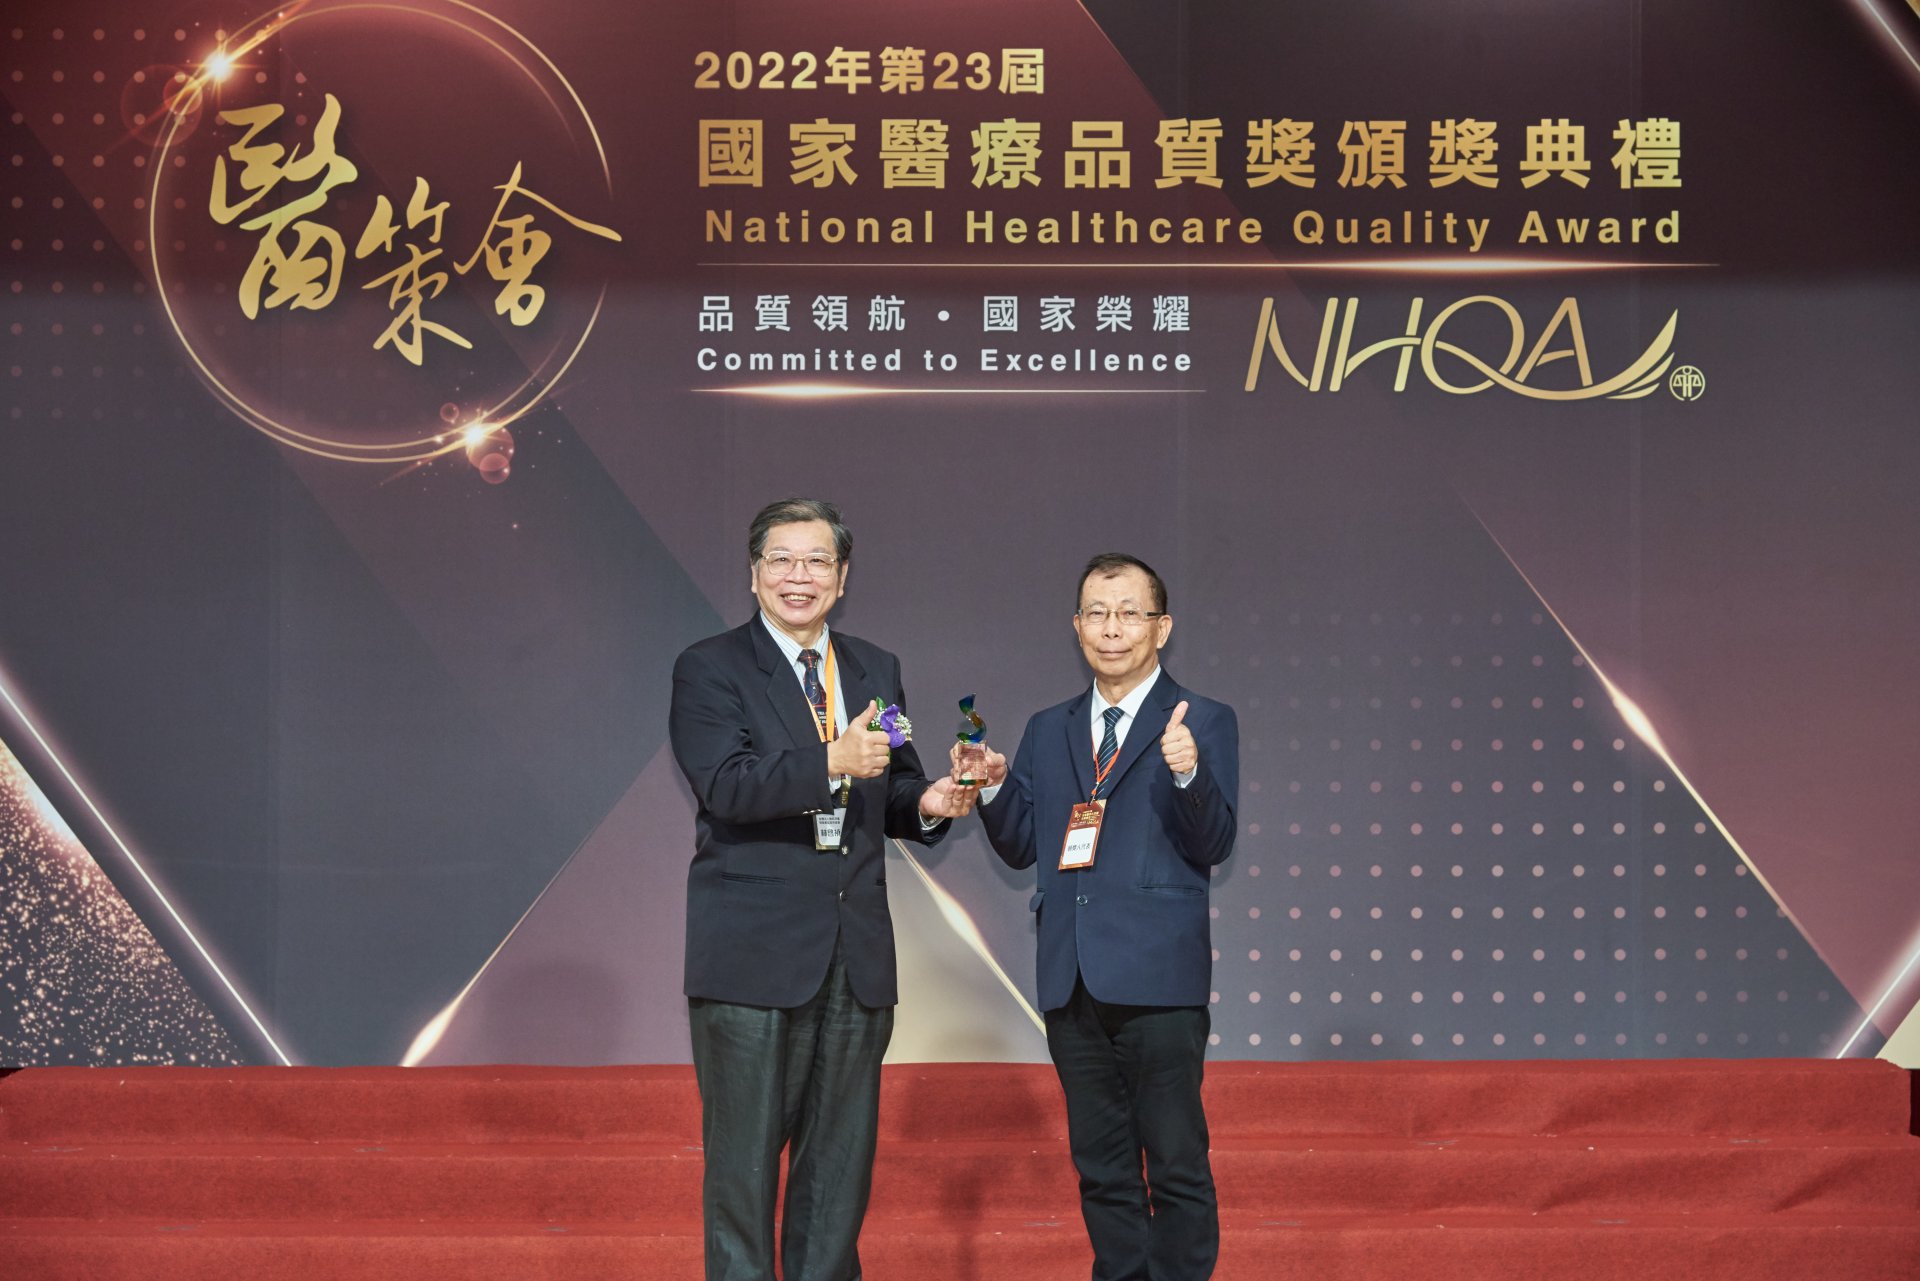 花蓮慈院在國家醫療品質獎智慧醫療類智慧解決方案組則是獲得2佳作、3標章的好成績，由吳彬安副院長(右)代表受獎。